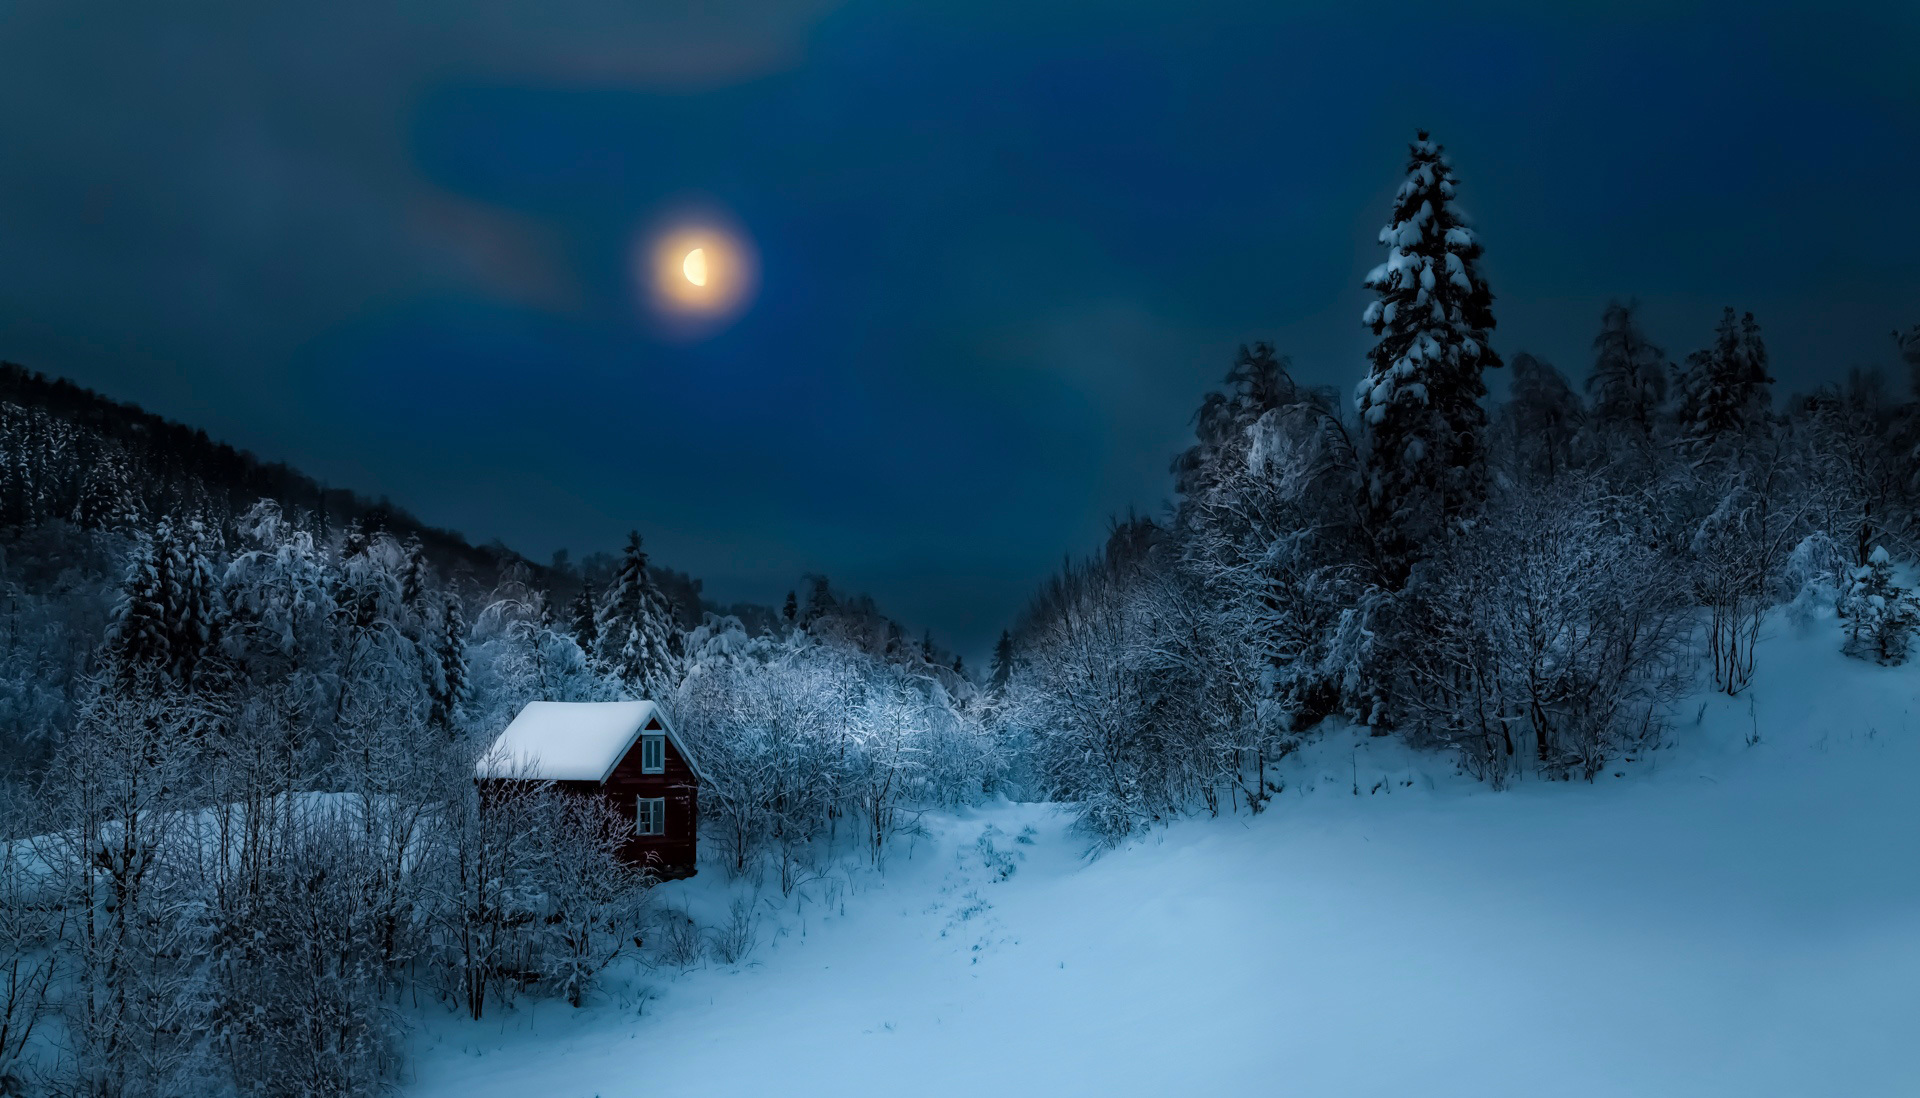 Скачать обои бесплатно Зима, Ночь, Луна, Снег, Лес, Синий, Дом, Ландшафт, Фотографии картинка на рабочий стол ПК